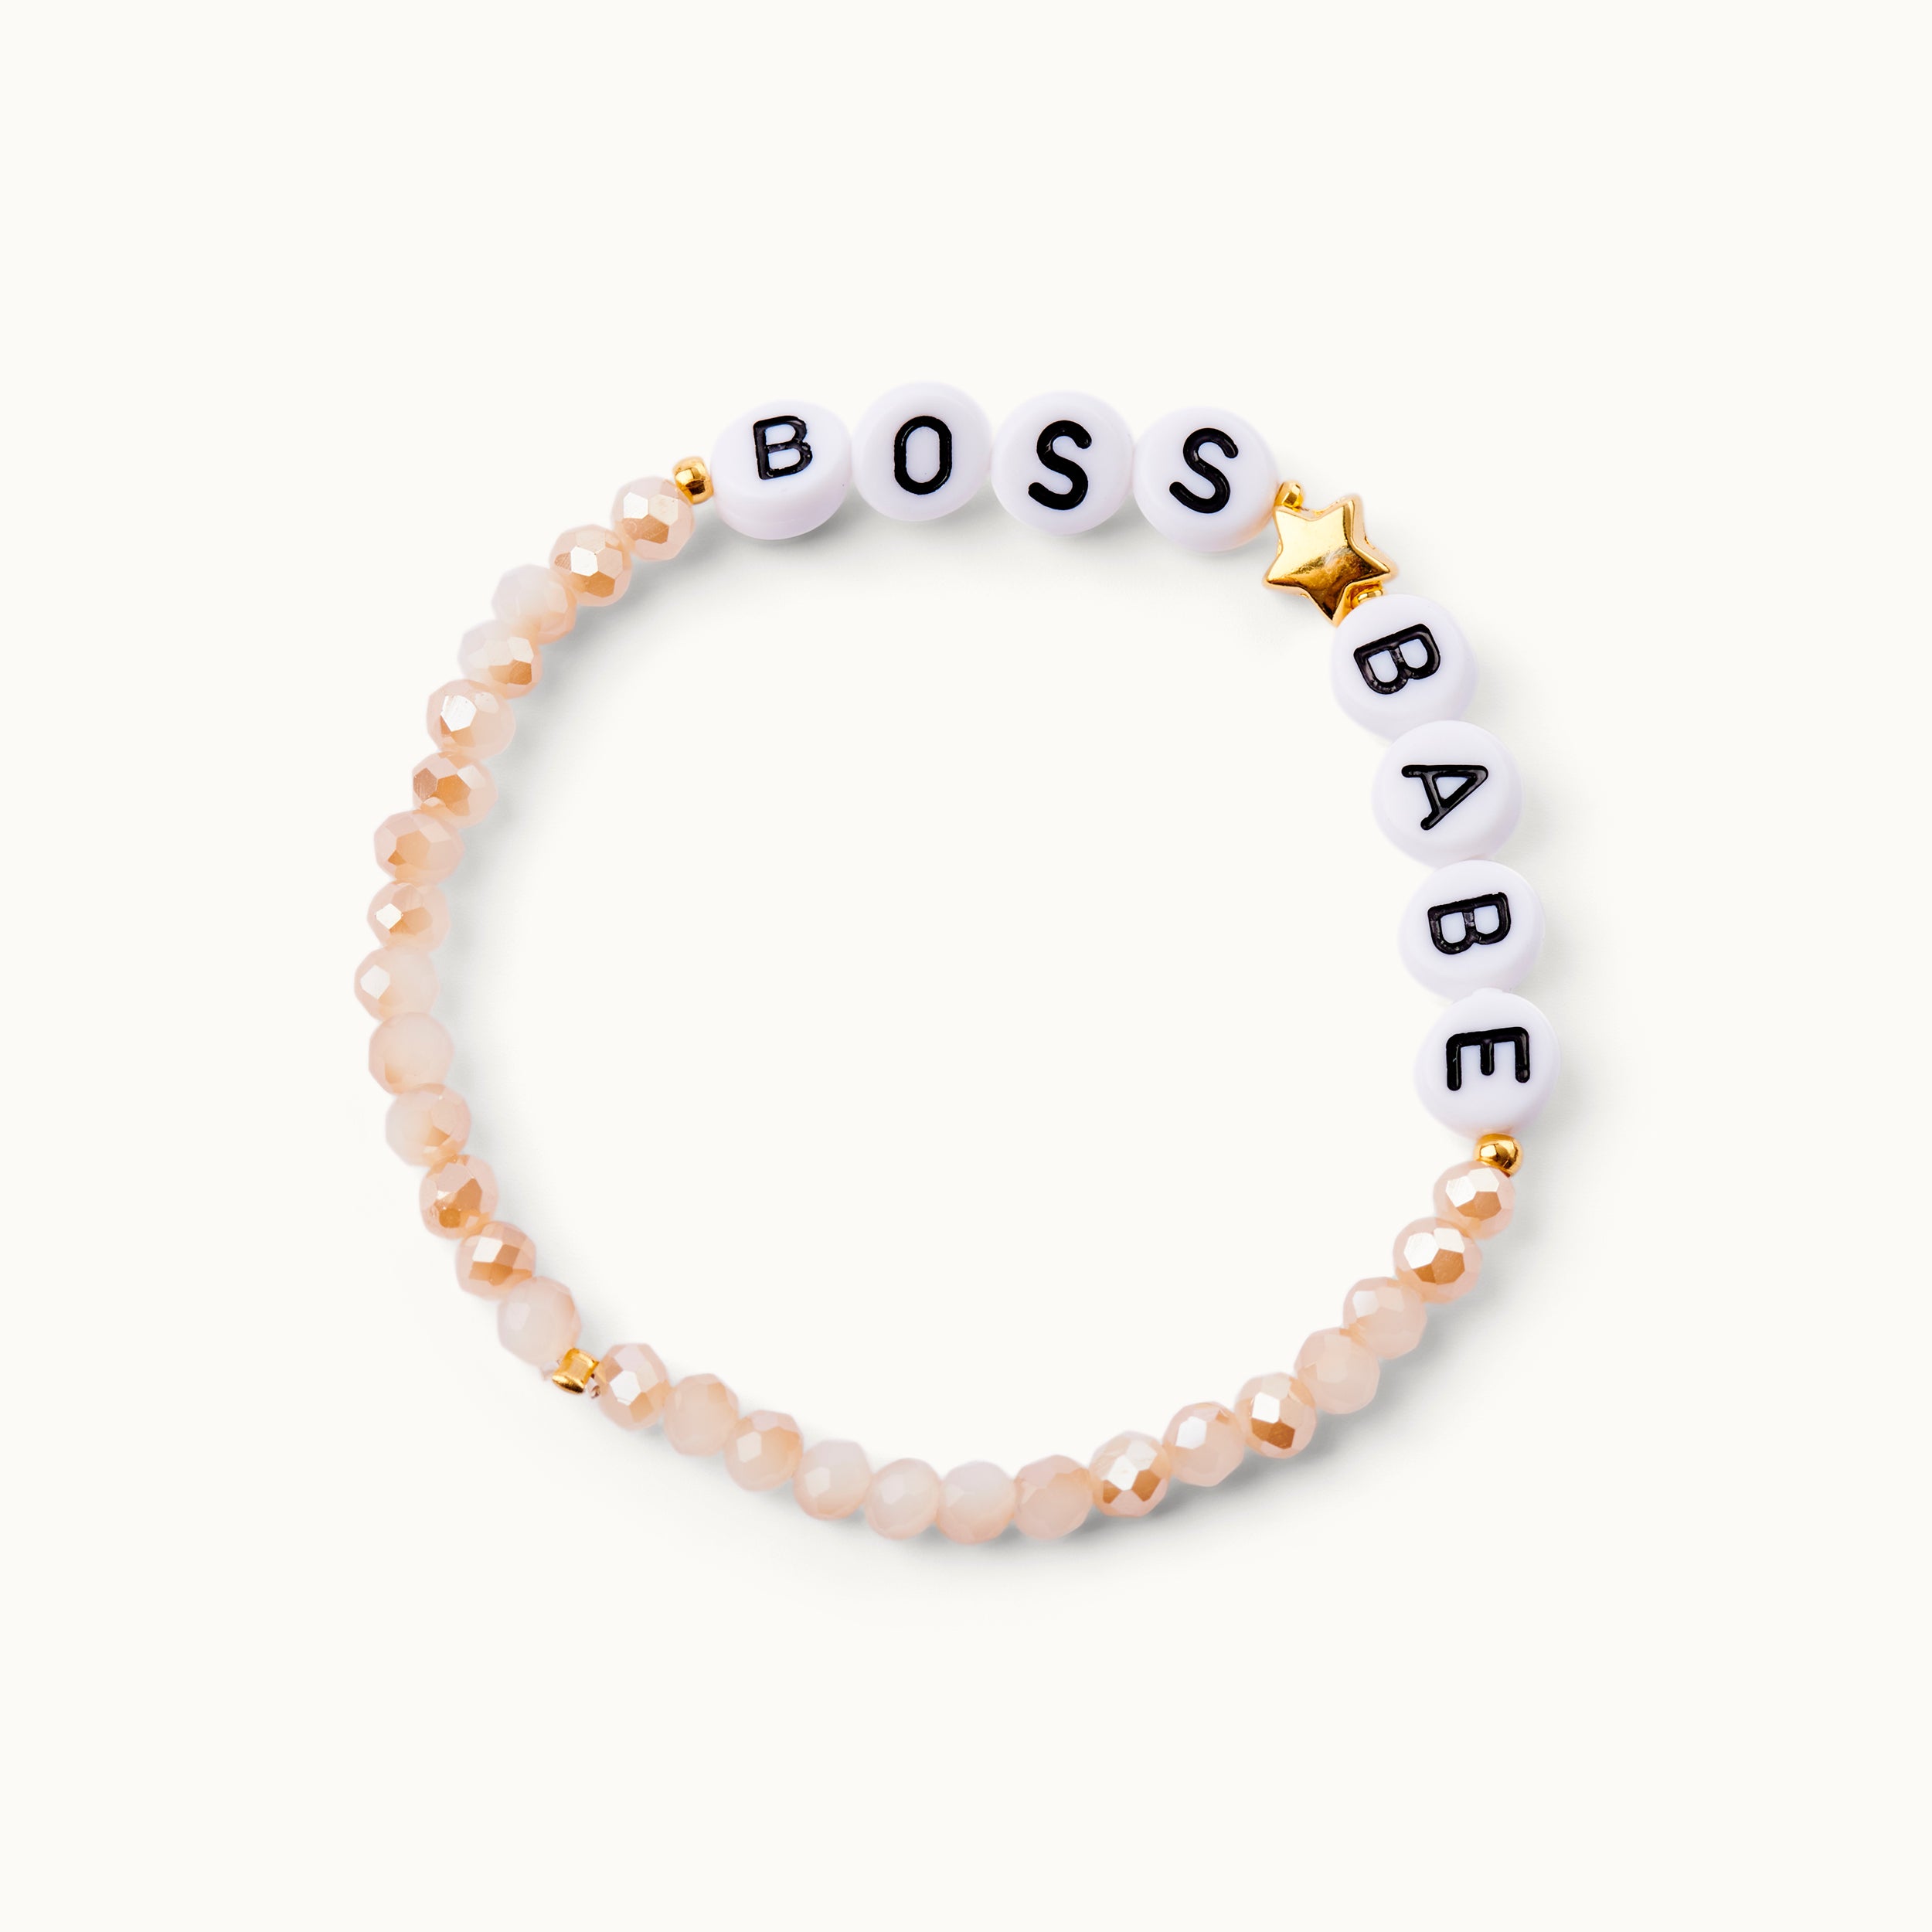 Boss ☆ Babe Glasperlenarmband in Nude-Tönen mit Acryl-Perlen und einem 18 Karat vergoldeten Stern sowie 18 Karat vergoldeten Kugeln. 